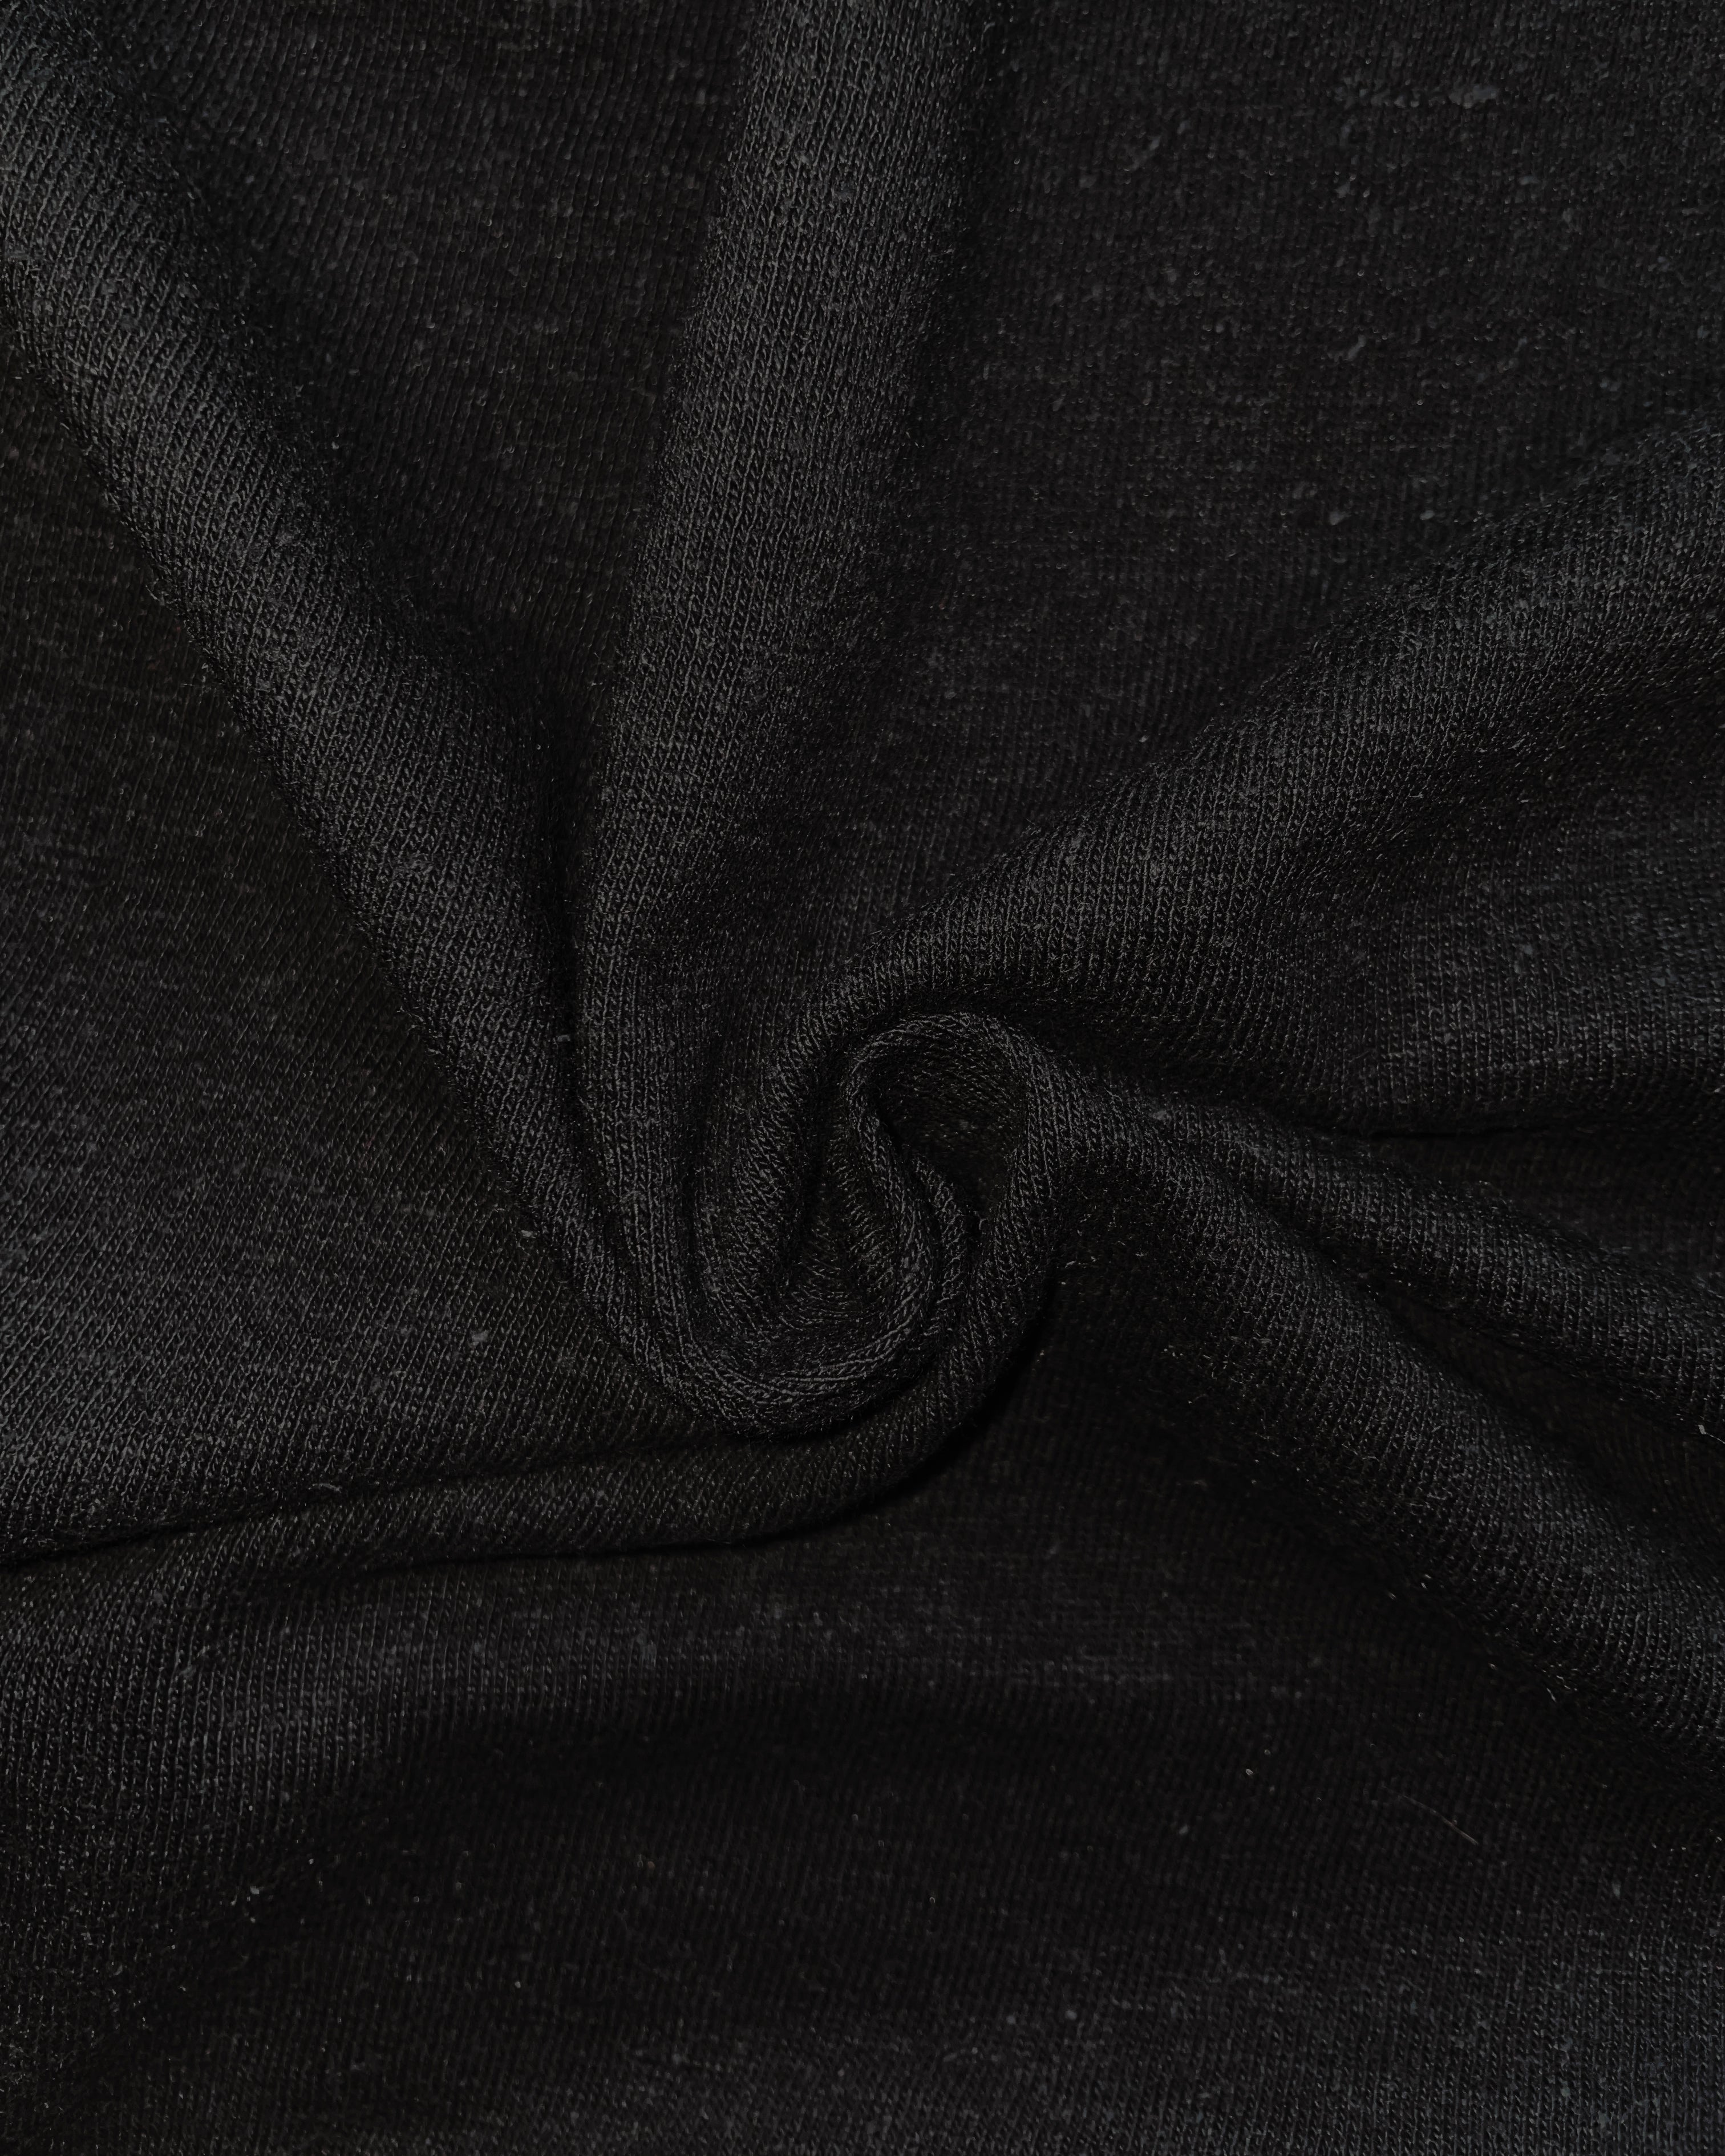 Fabric | Black Cotton Hemp